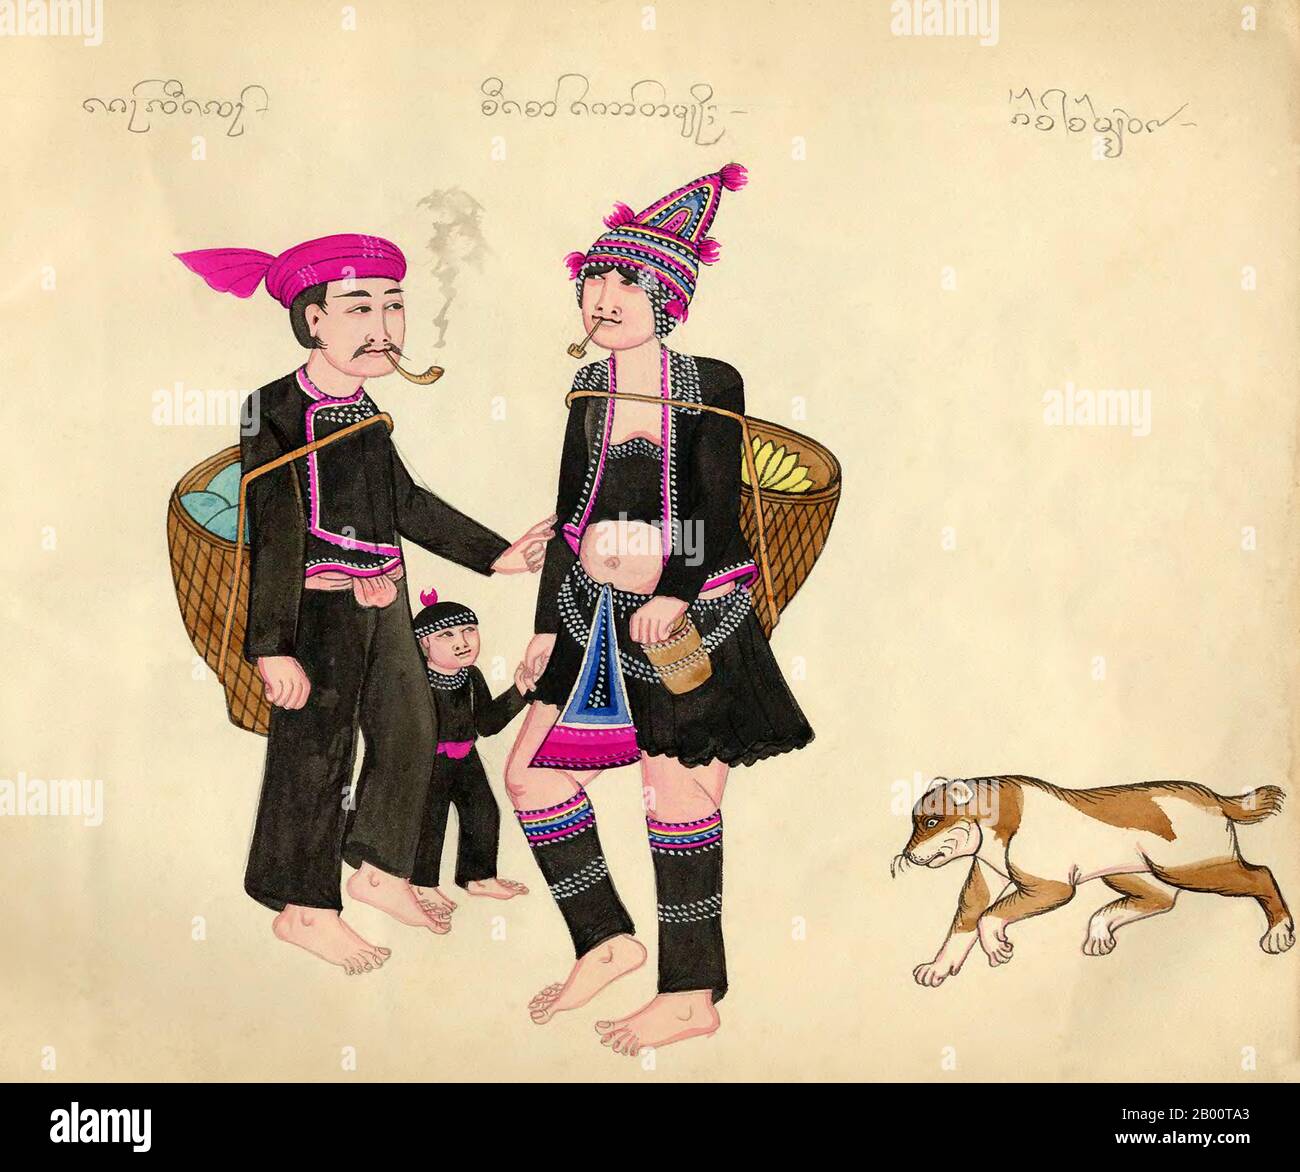 Birmanie/Myanmar: Une famille Akha - homme, femme et enfant - en costume traditionnel, les adultes fument des pipes, avec leur chien. Aquarelle de la fin du XIXe siècle dessinée à la main par un artiste birman inconnu. Le nom du groupe ethnique en vedette apparaît en haut de l'image dans les textes Shan (à gauche), birman (au centre) et Khun (à droite). Le script Khun était autrefois utilisé à Kengtung/Kyaingtong dans l'est de l'État de Shan et dans LAN Na ou Lanna, dans le nord de la Thaïlande. Banque D'Images